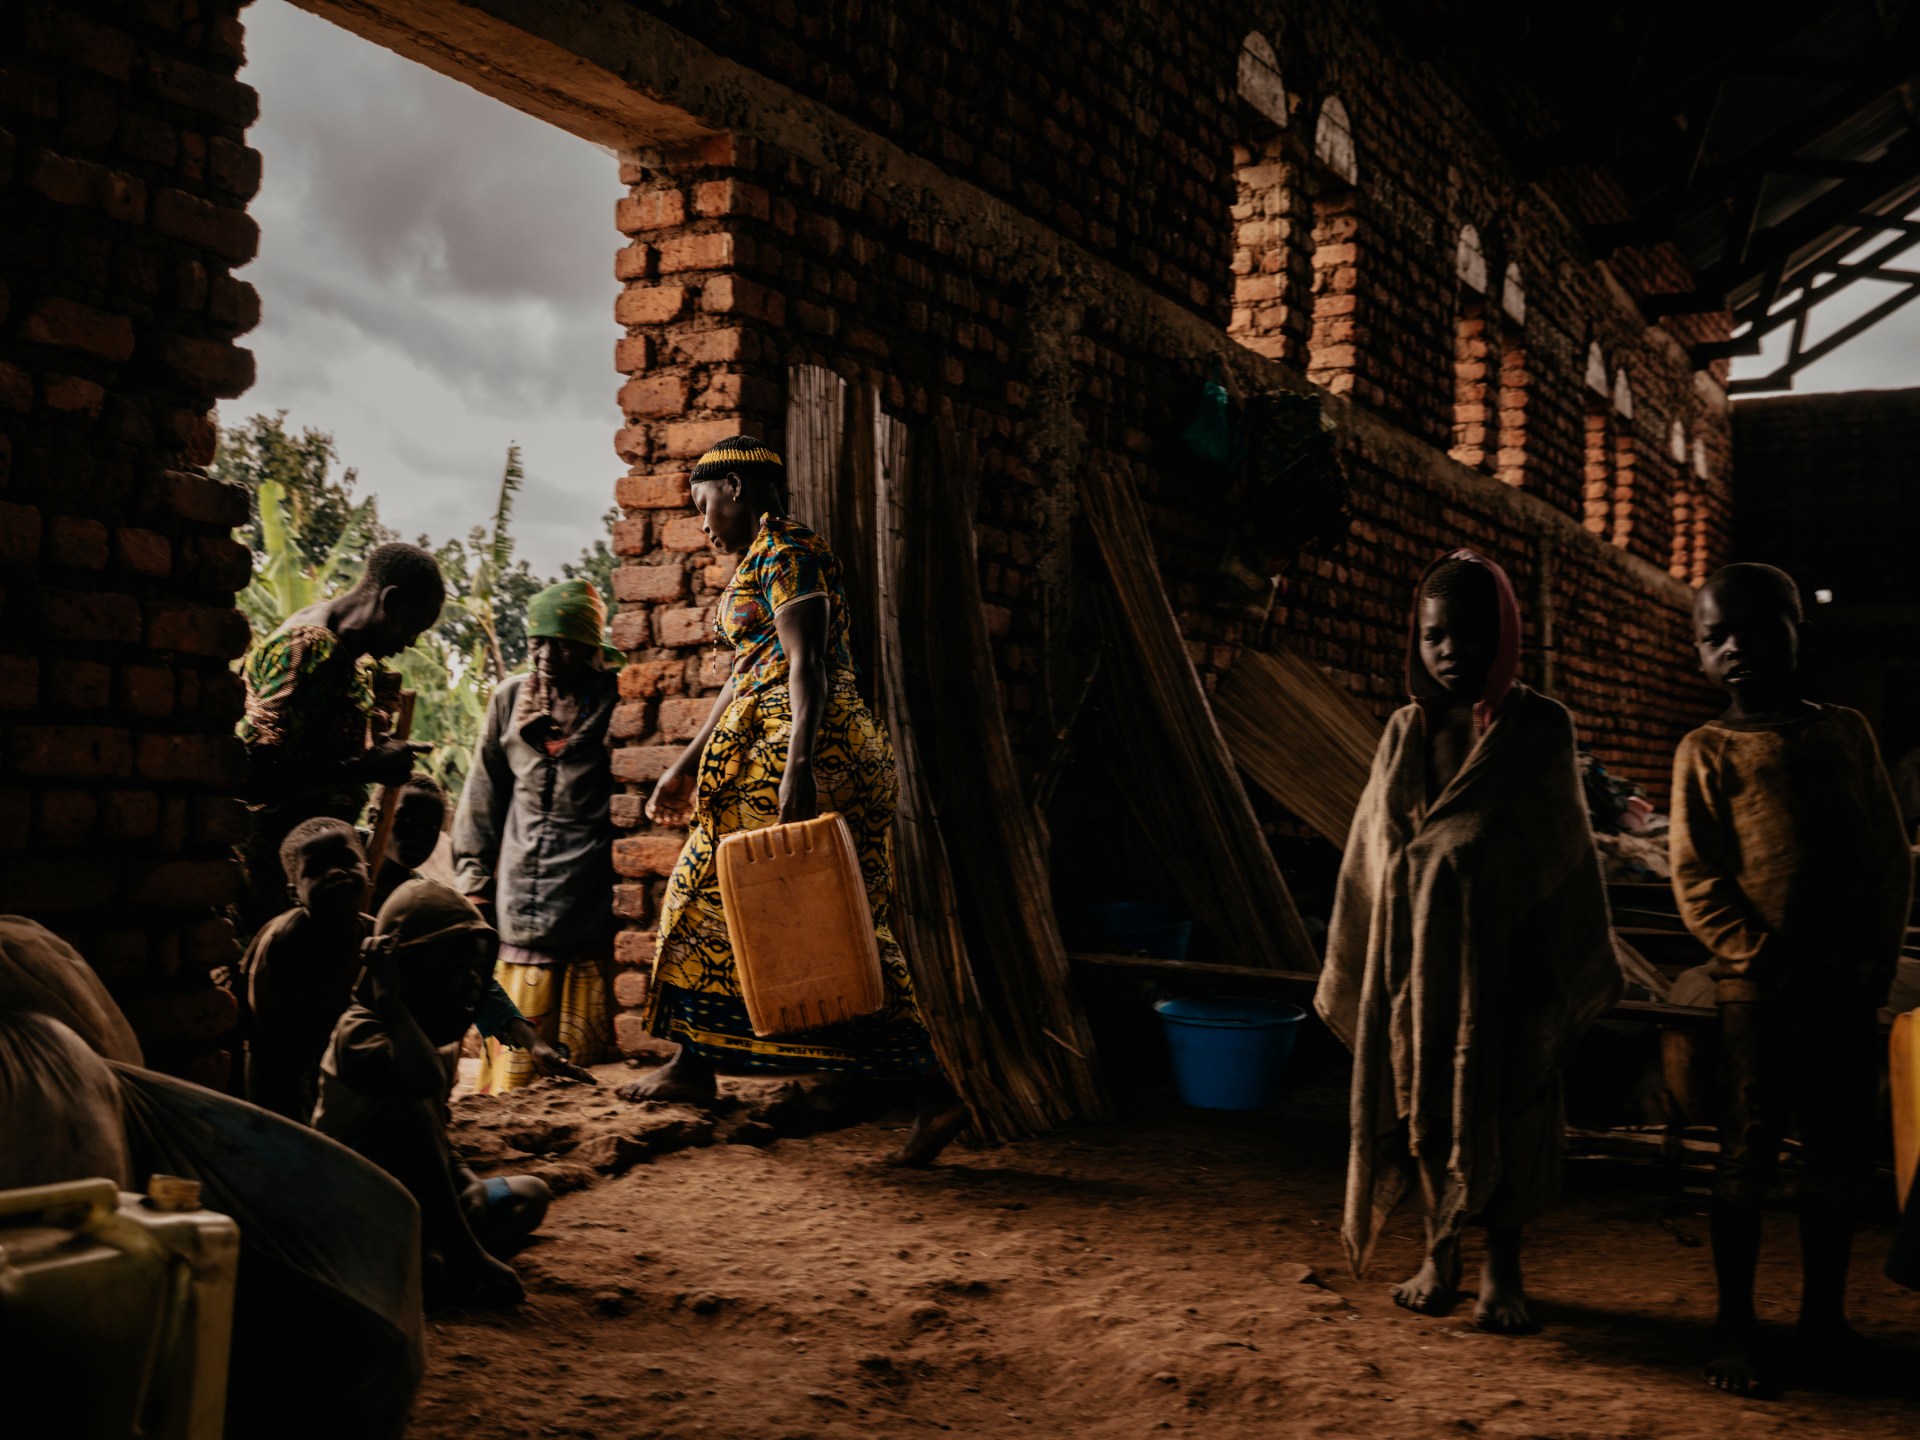 Serangan pemberontak memperdalam krisis pengungsian di provinsi Ituri DRC |  Berita Kelompok Bersenjata